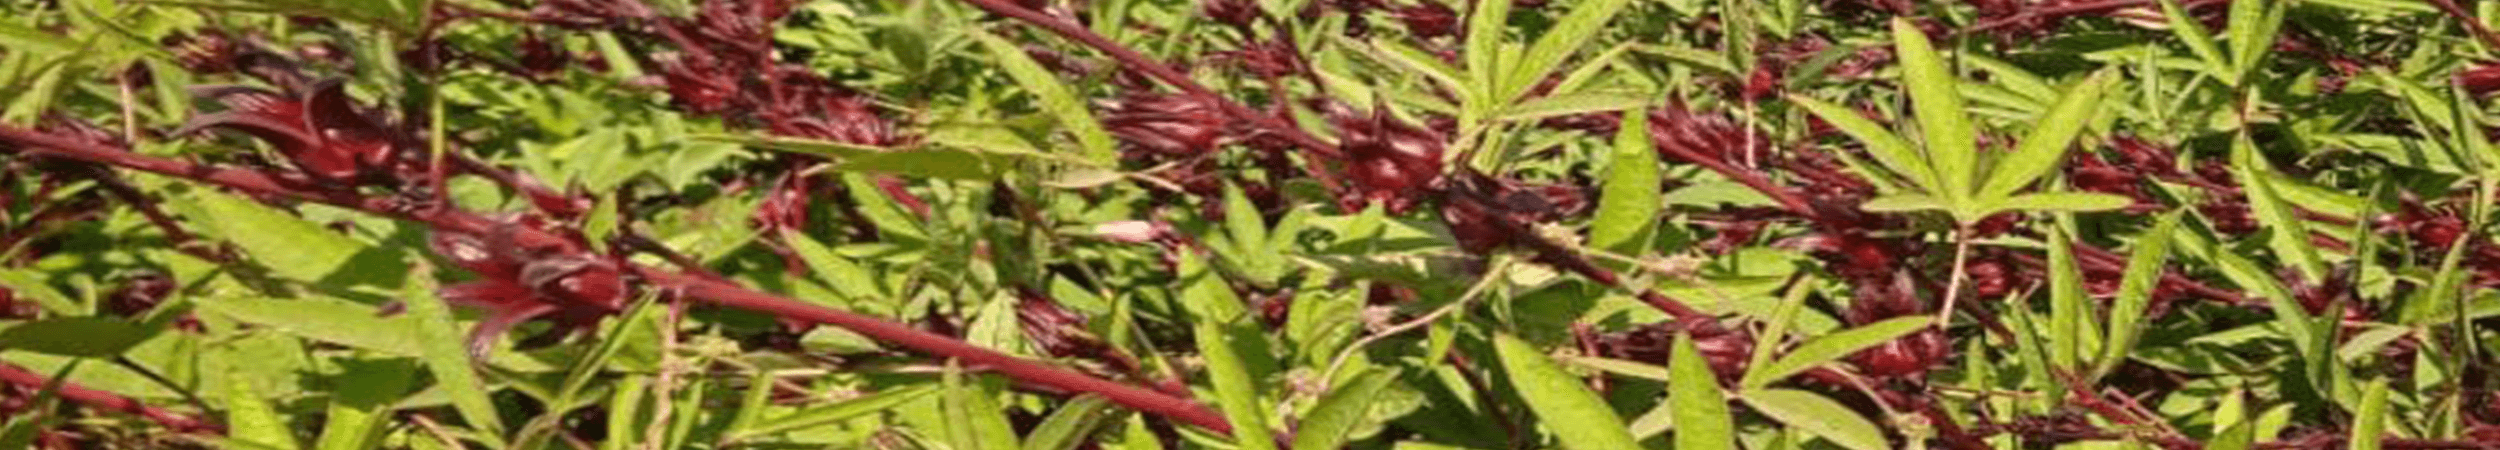 جمعية تنمية مزارعى الأعشاب المصرية بالفيوم